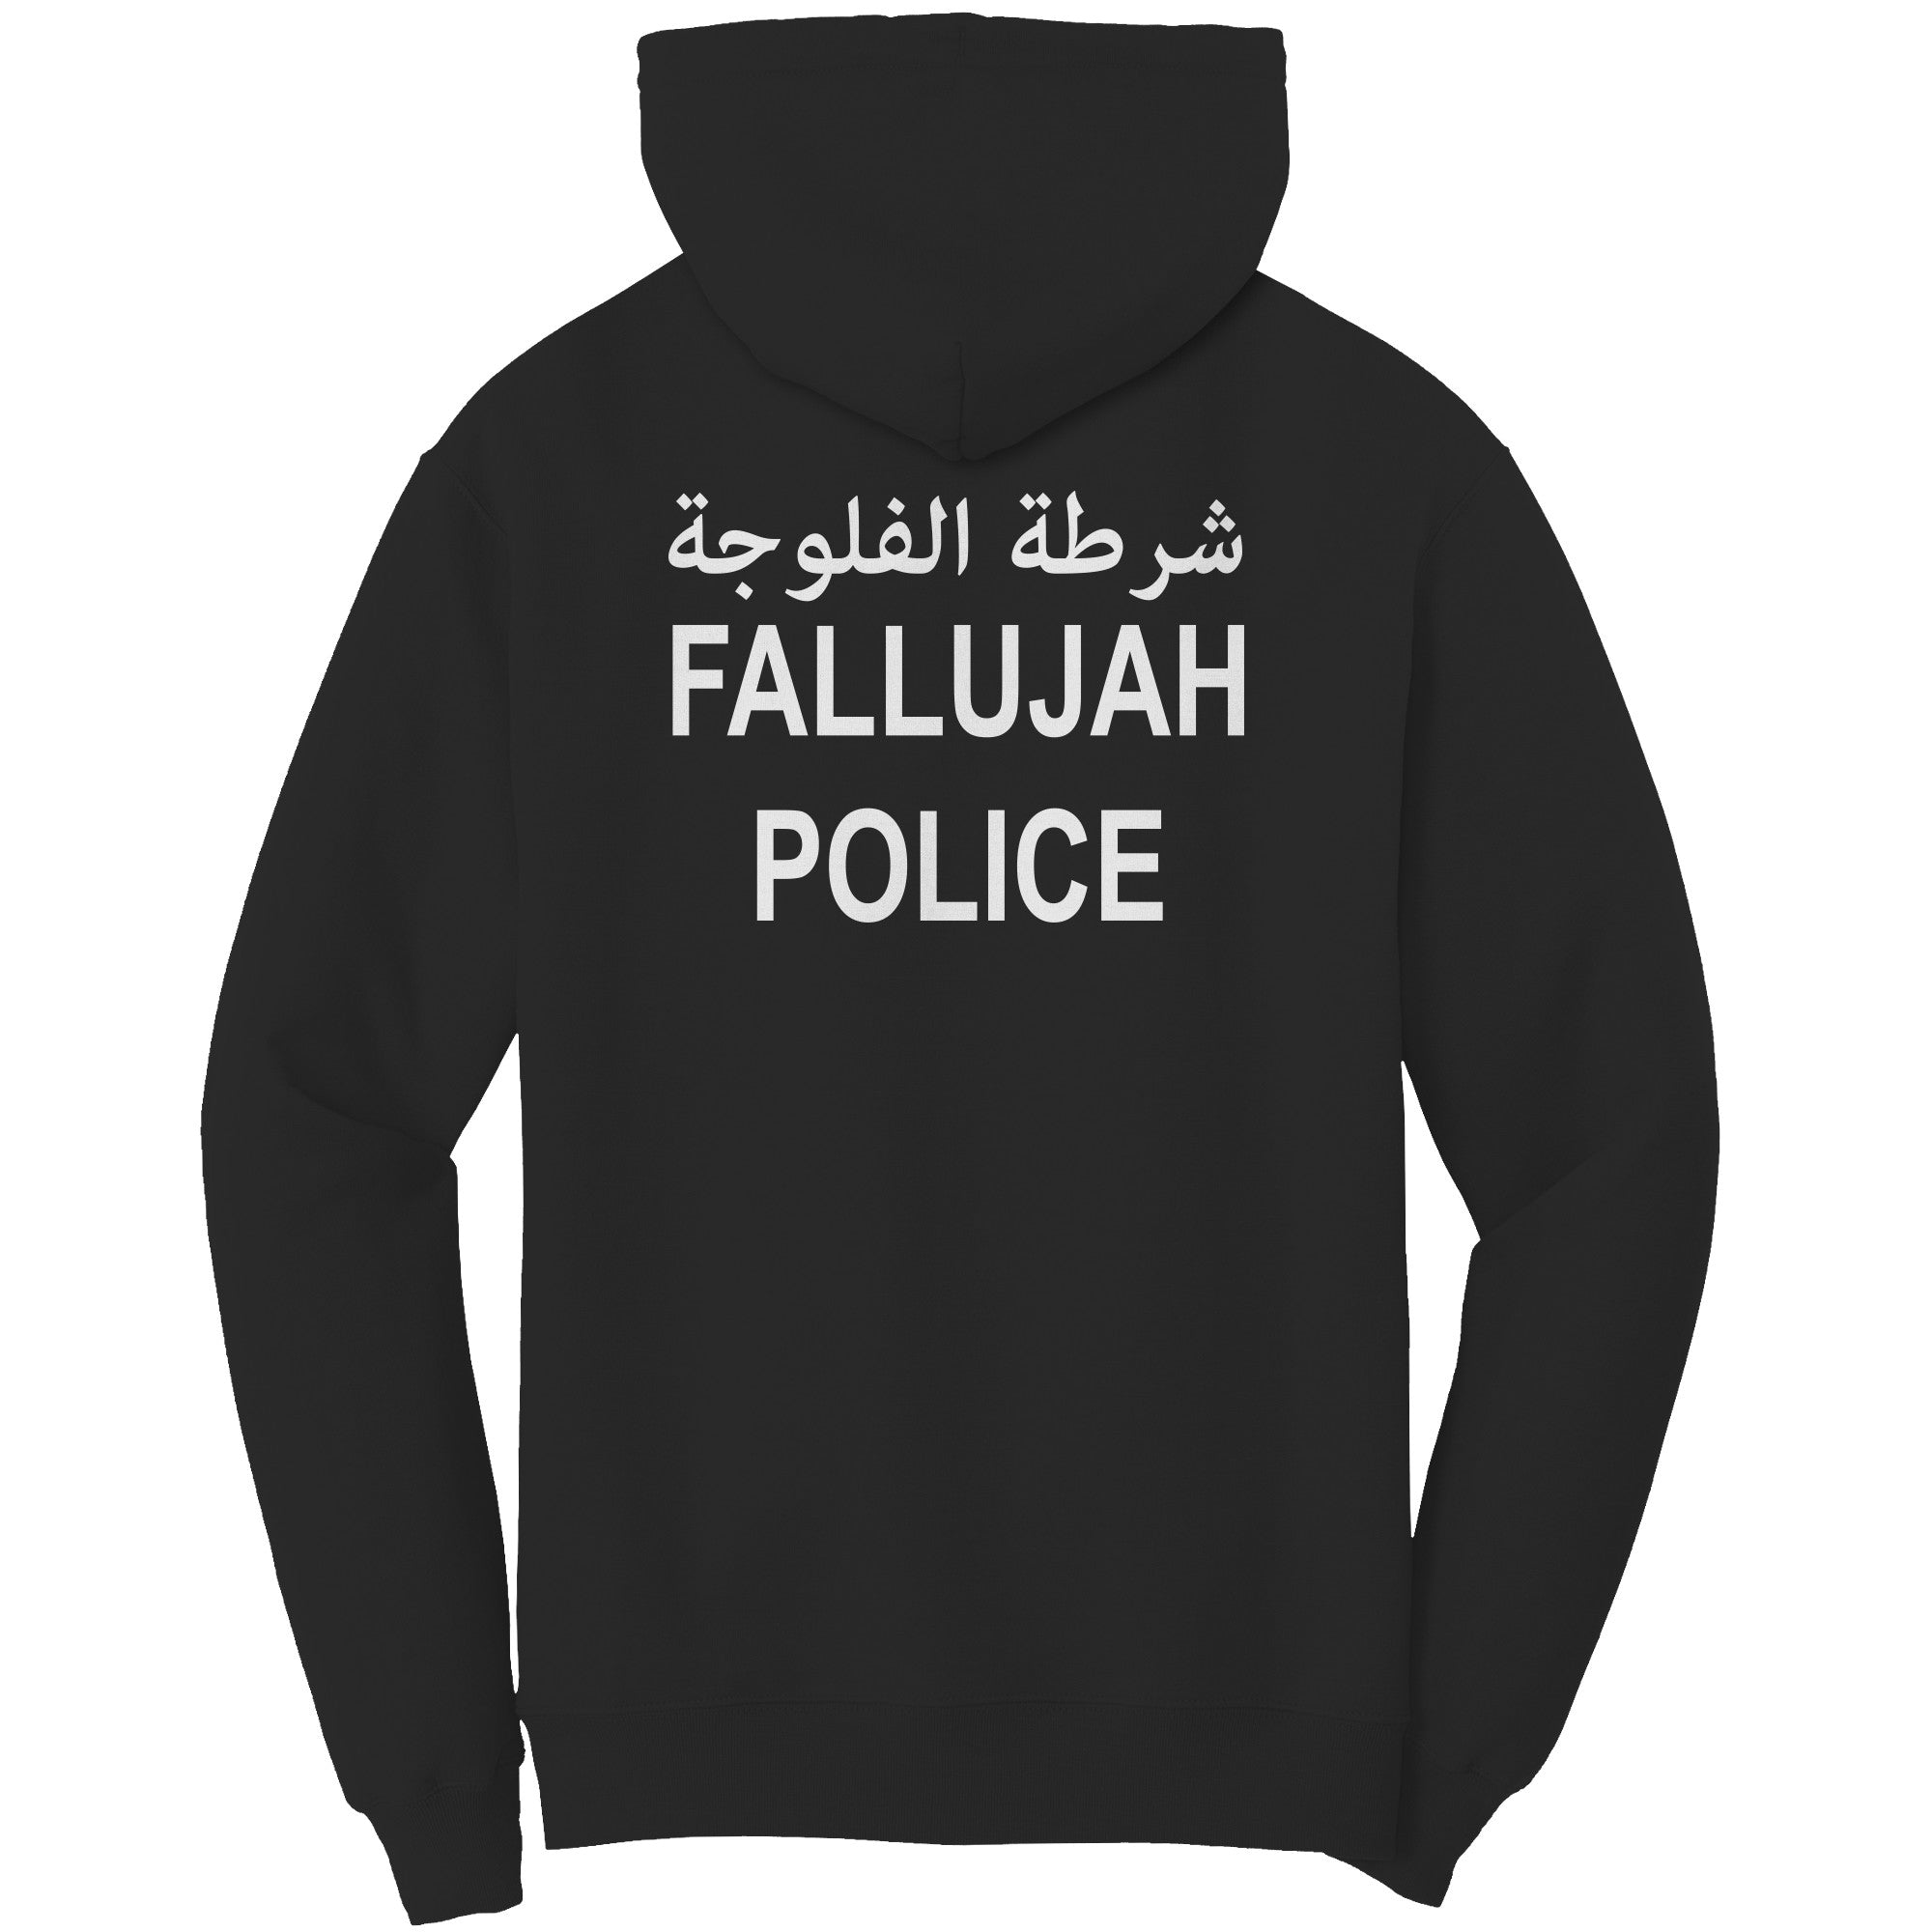 FALLUJAH POLICE 50/50 HOODIE